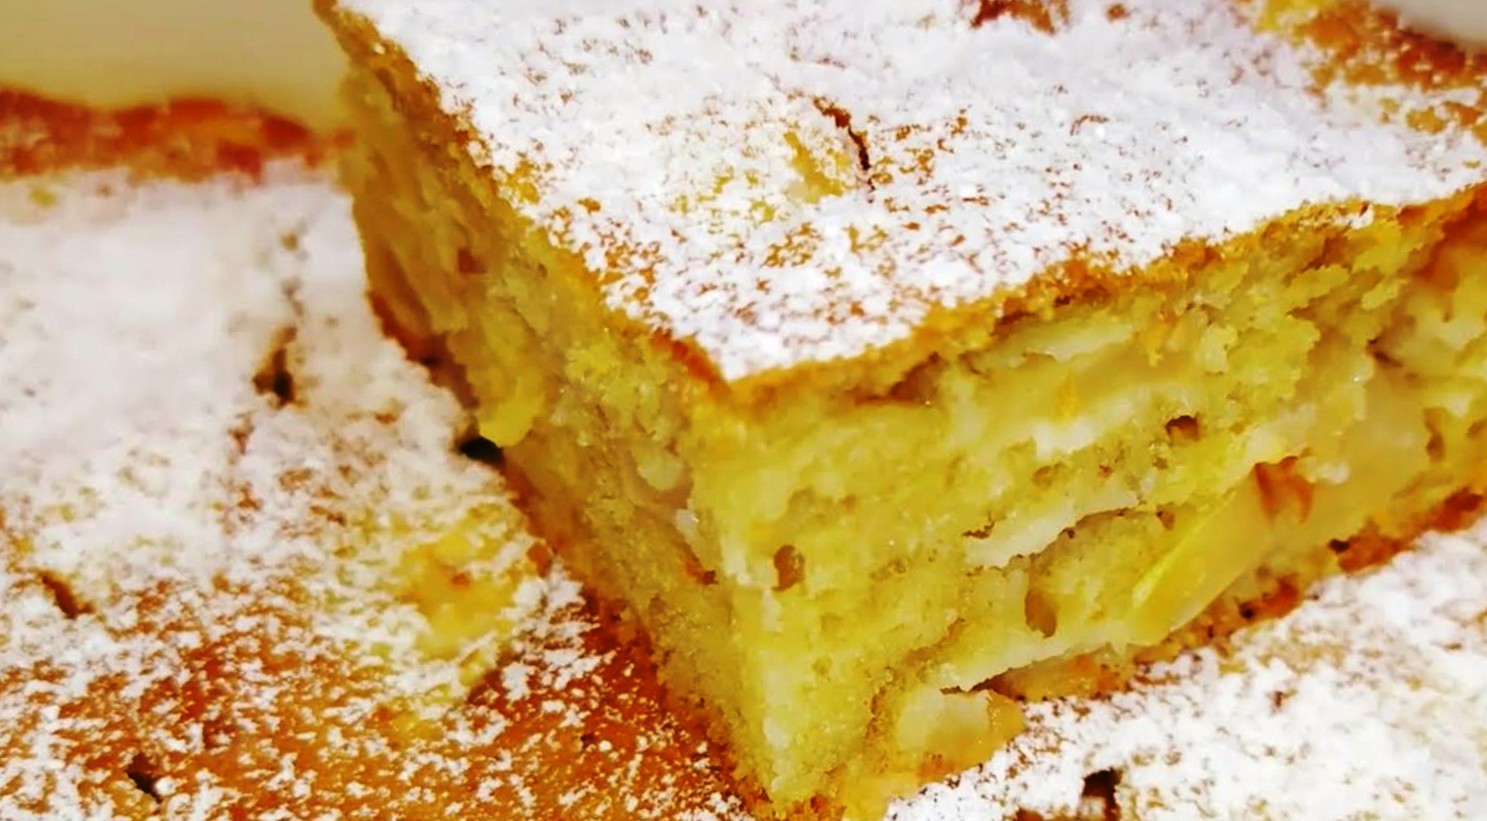 Пирог на скорую руку в духовке - простые и быстрые рецепты с яблоками, вареньем, капустой